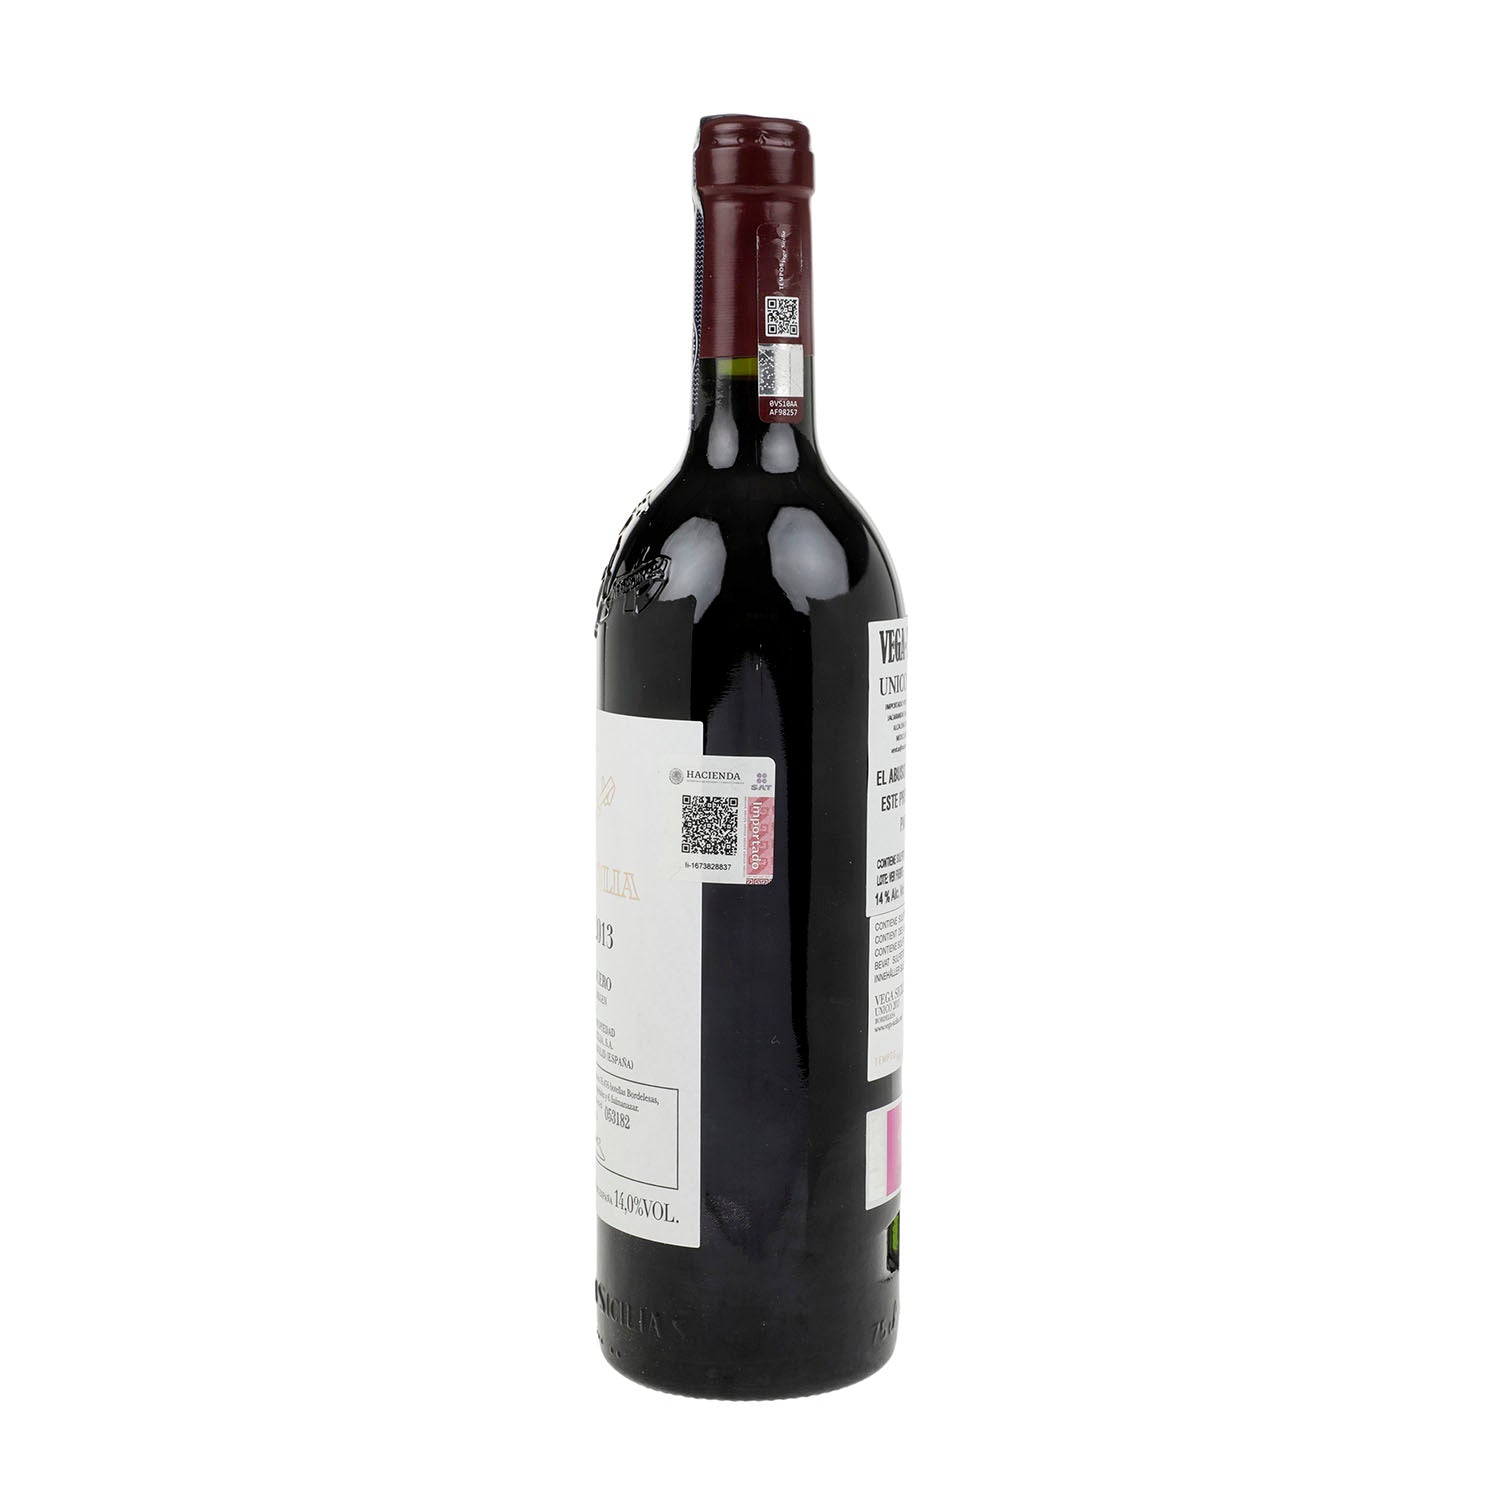 Vino Tinto Vega Sicilia Único 2013 de 750 ml